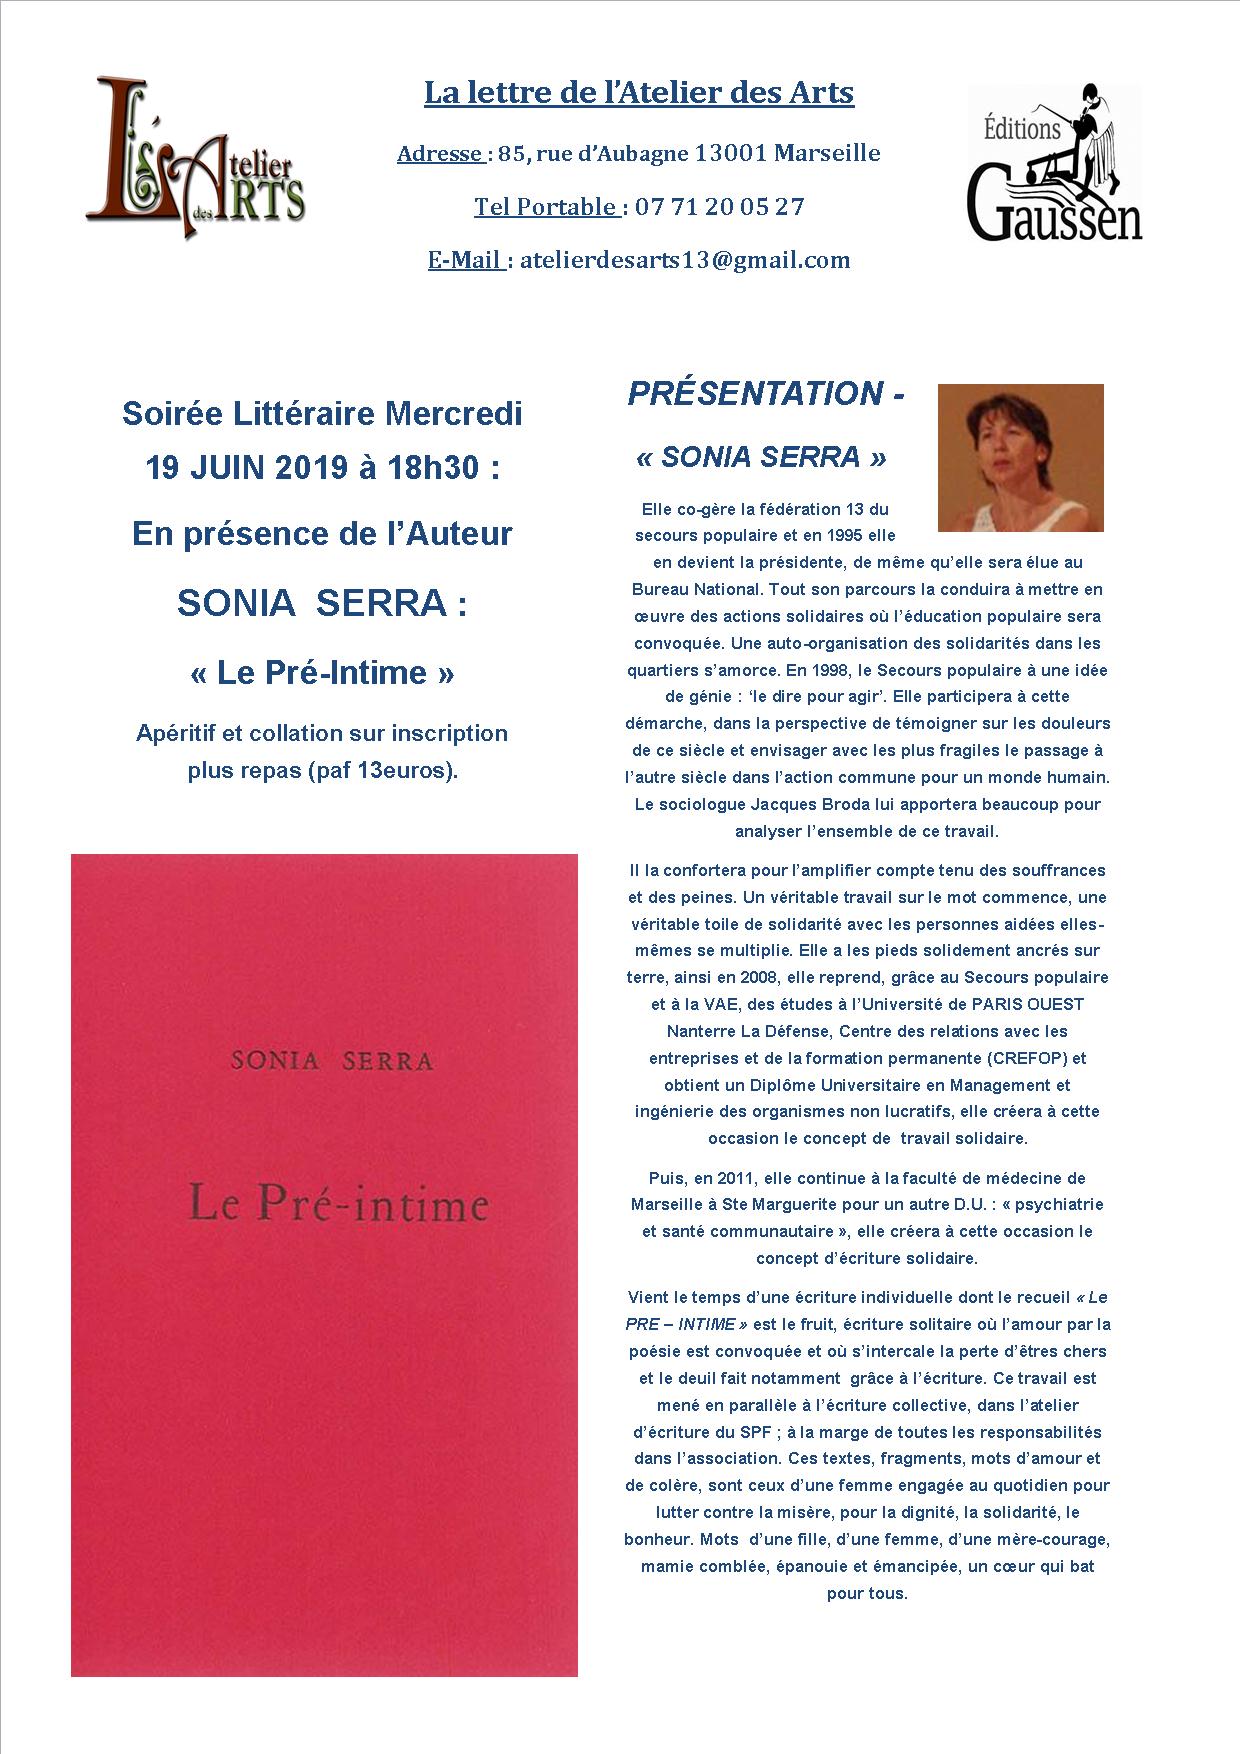 (2) Soirée littéraire « Le Pré-intime » le 19 juin à la galerie de l’Atelier des ARTS en présence de « l’Autrice » Sonia SERRA